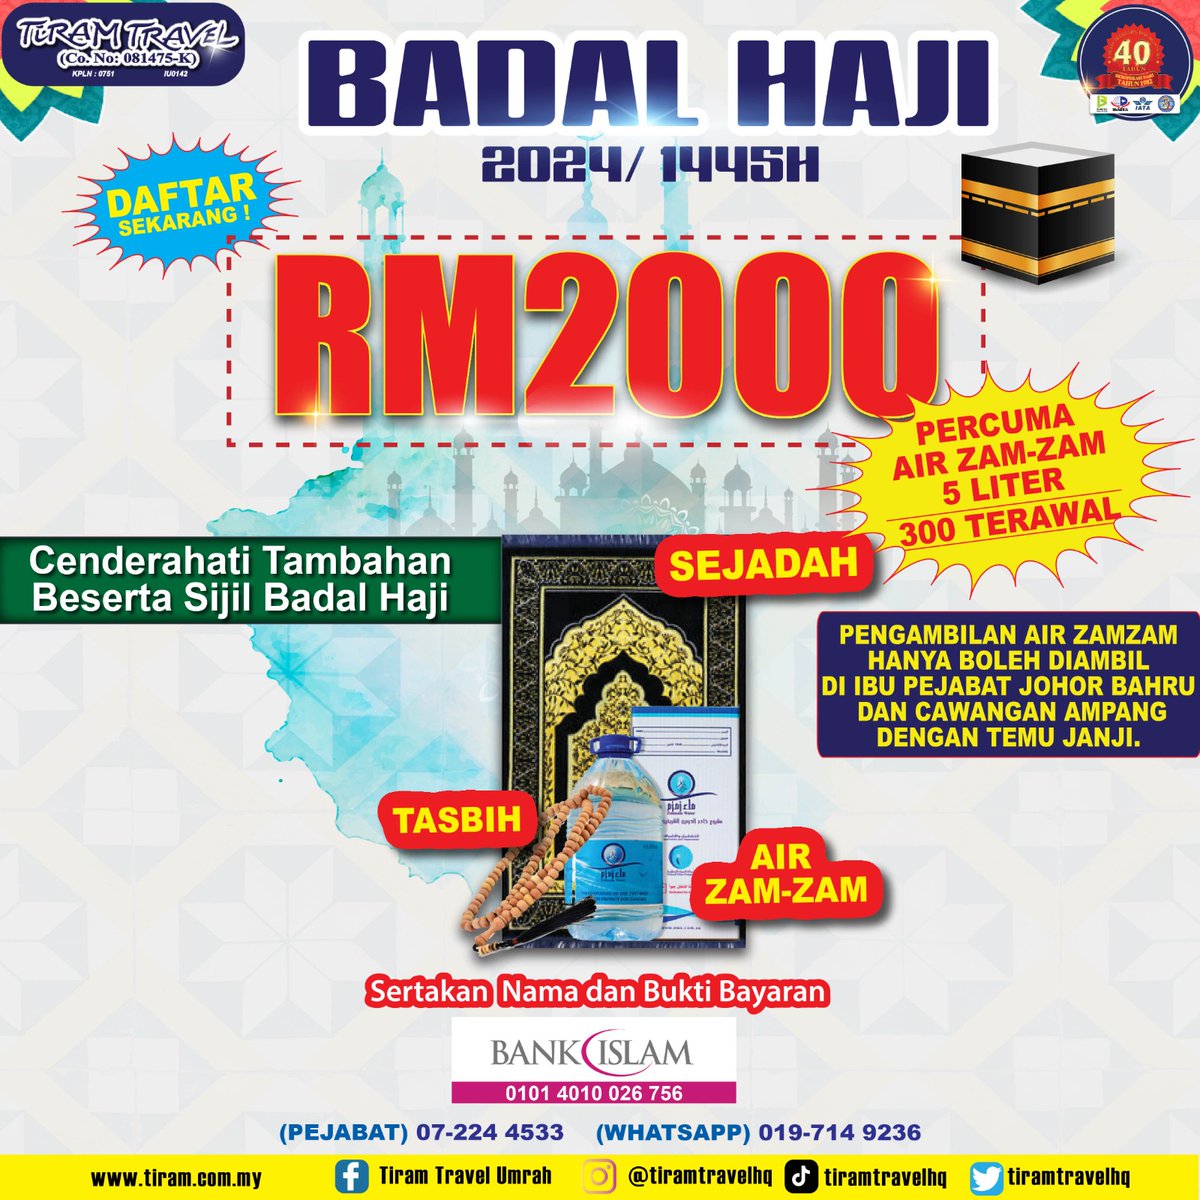 Pendaftaran Badal Haji bagi musim 1445H / 2024 telah dibuka untuk pendaftaran.

Untuk pendaftaran atau sebarang pertanyaan, boleh hubungi kami di talian : 
HQ : 07-2244533 
wa.me/60197149236

#badalhaji
#tiramtravel